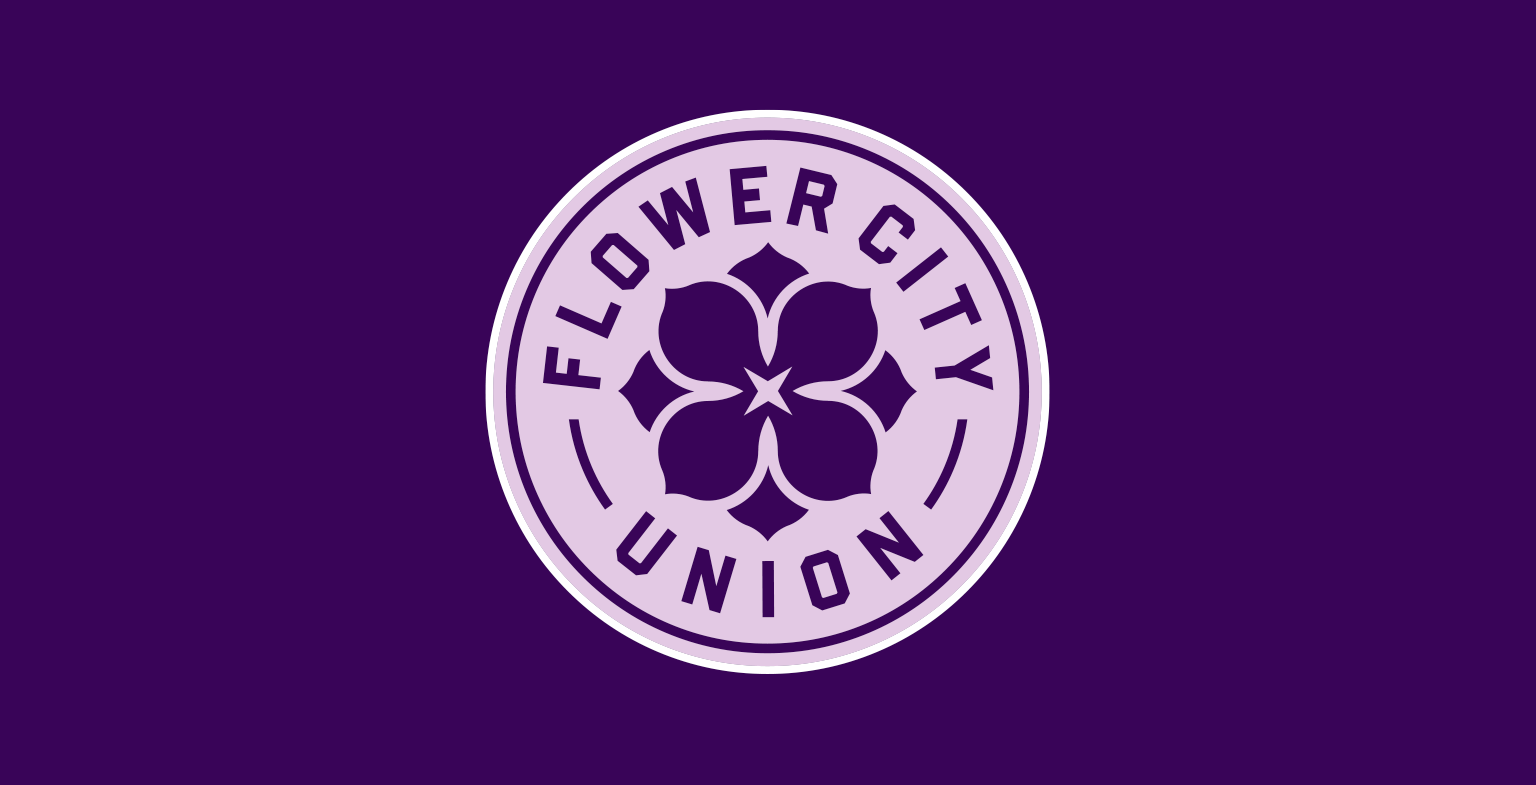 The Flower City Union crest